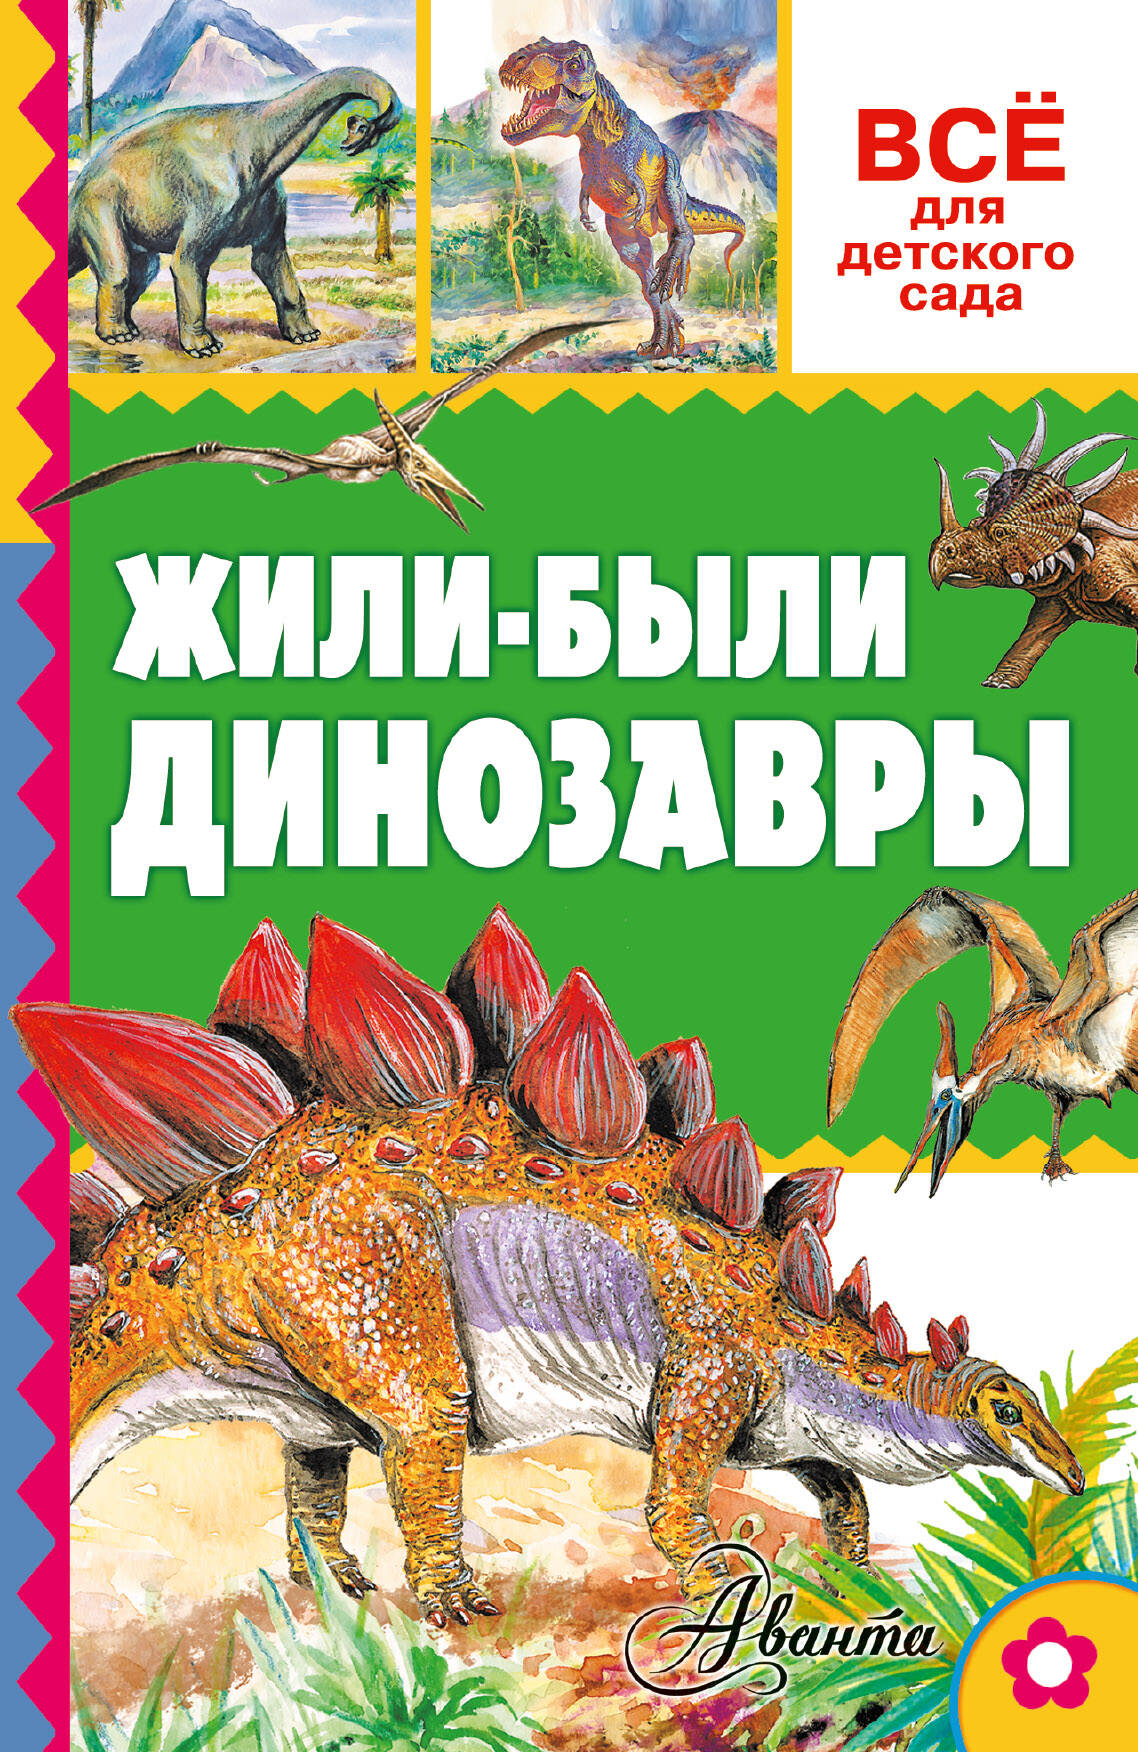 Тихонов Александр Васильевич Жили-были динозавры - страница 0